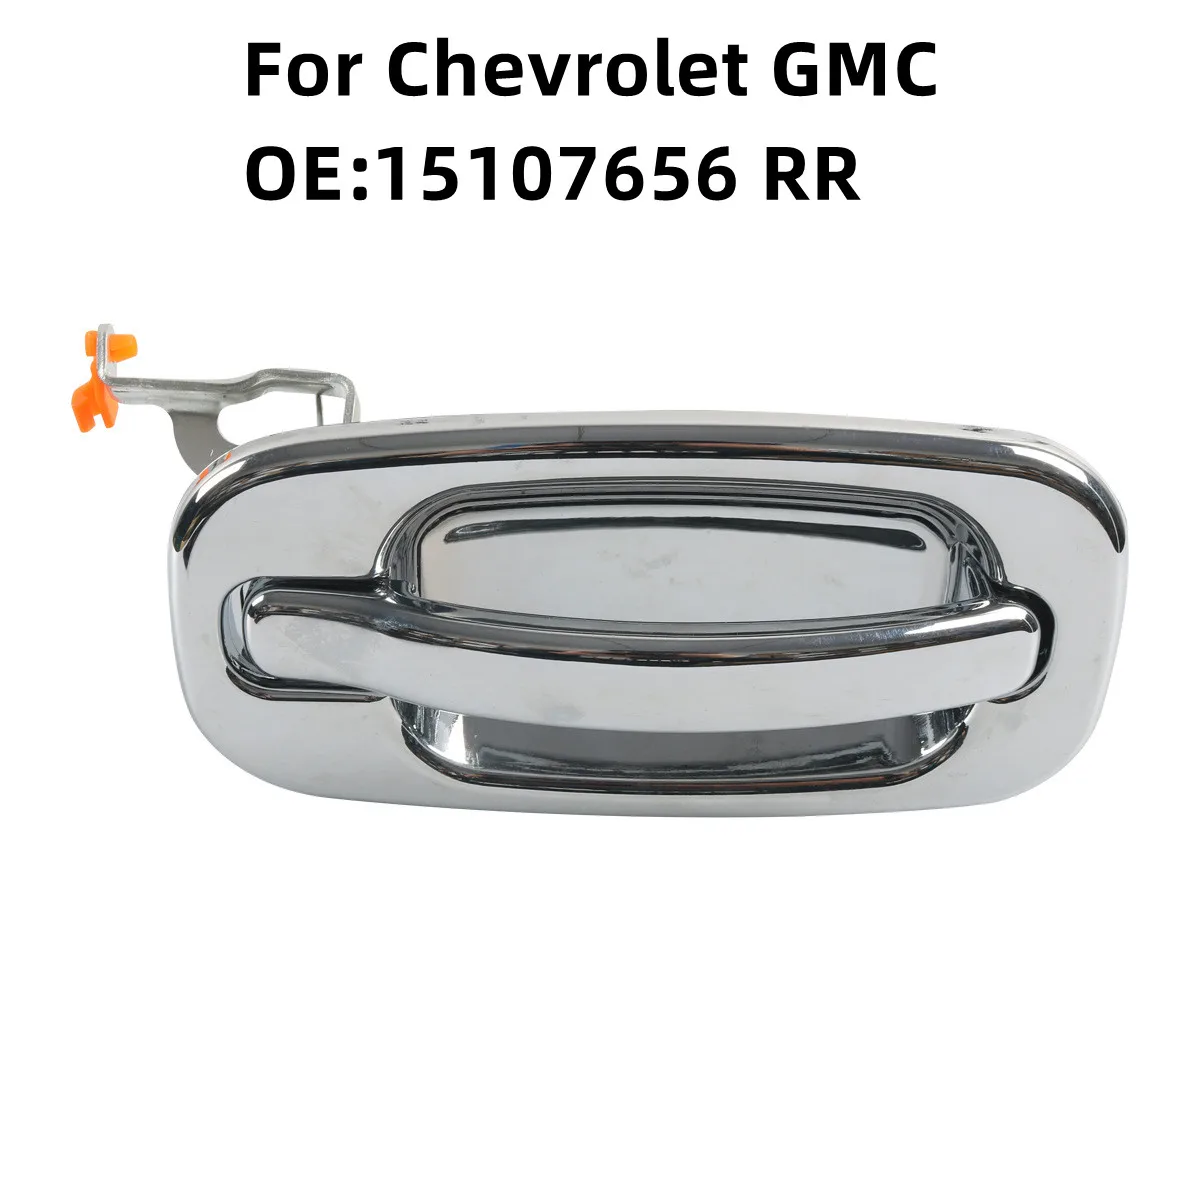 

1 шт. хромированная задняя правая наружная дверная ручка для Chevy aval, Silverado/ GMC Yukon 15107656 RR